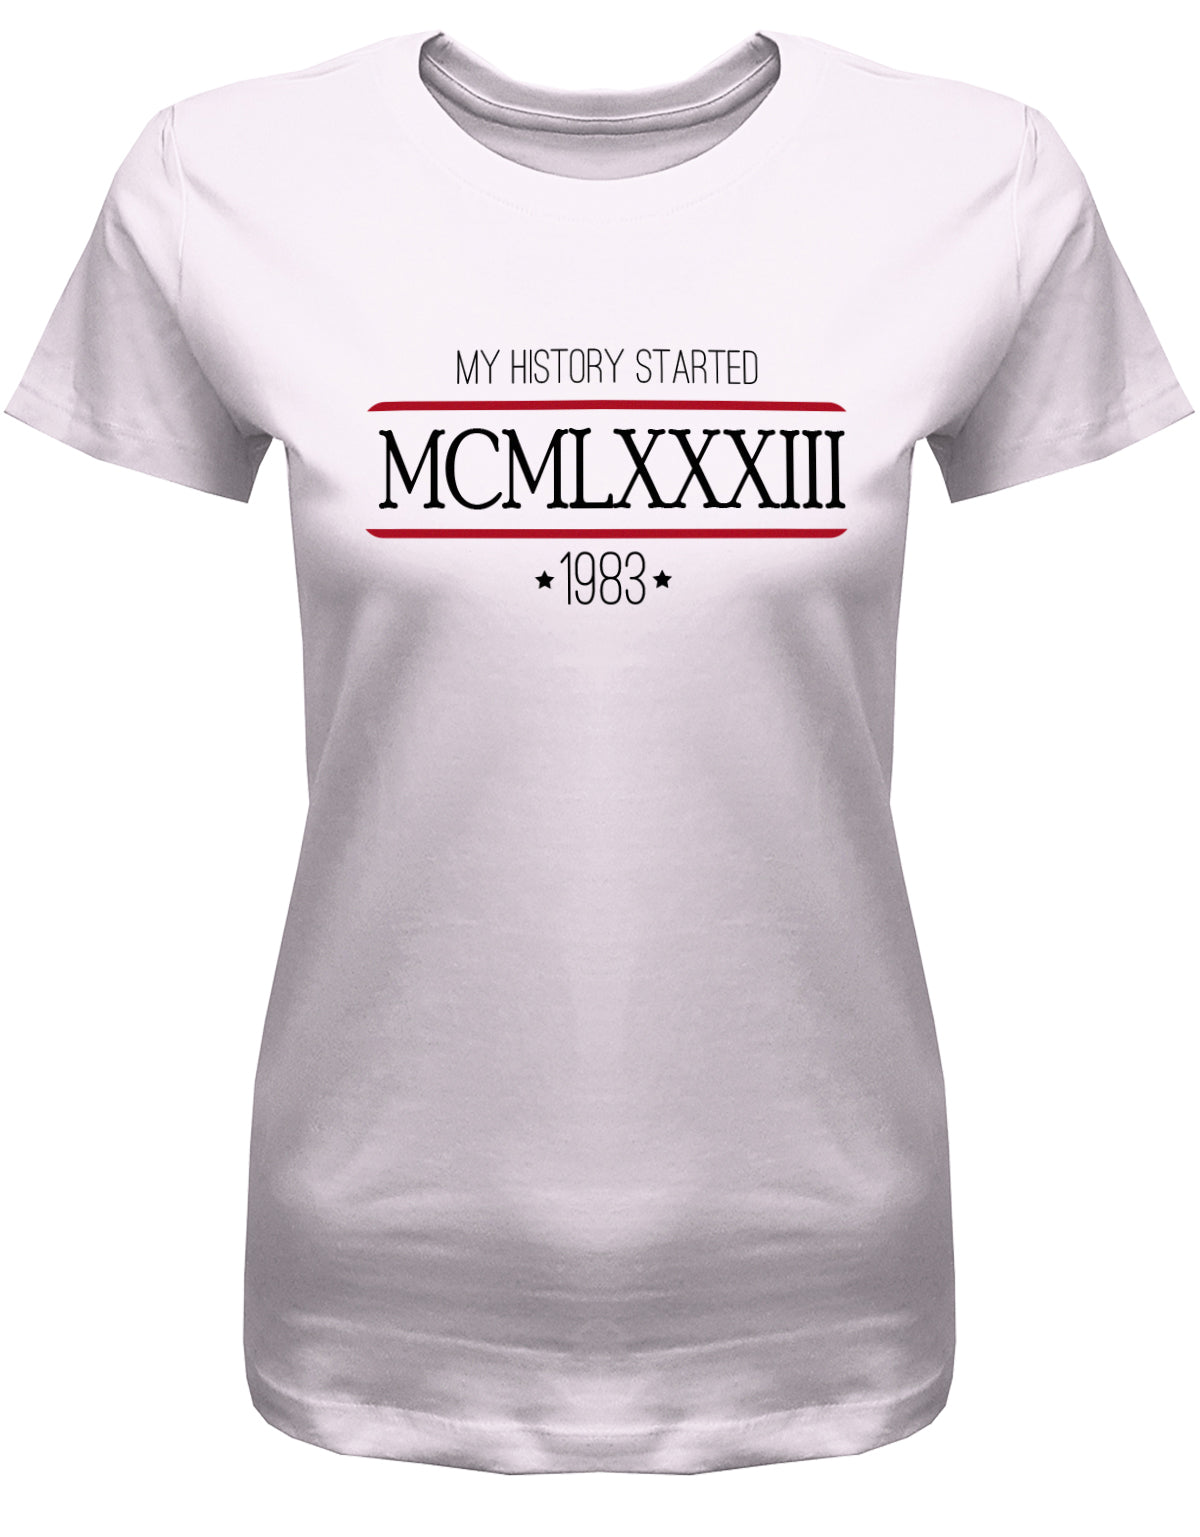 my history started 1983 - MCMLXXXIII römische Zahlen - Jahrgang 1983 Geschenk Frauen Shirt